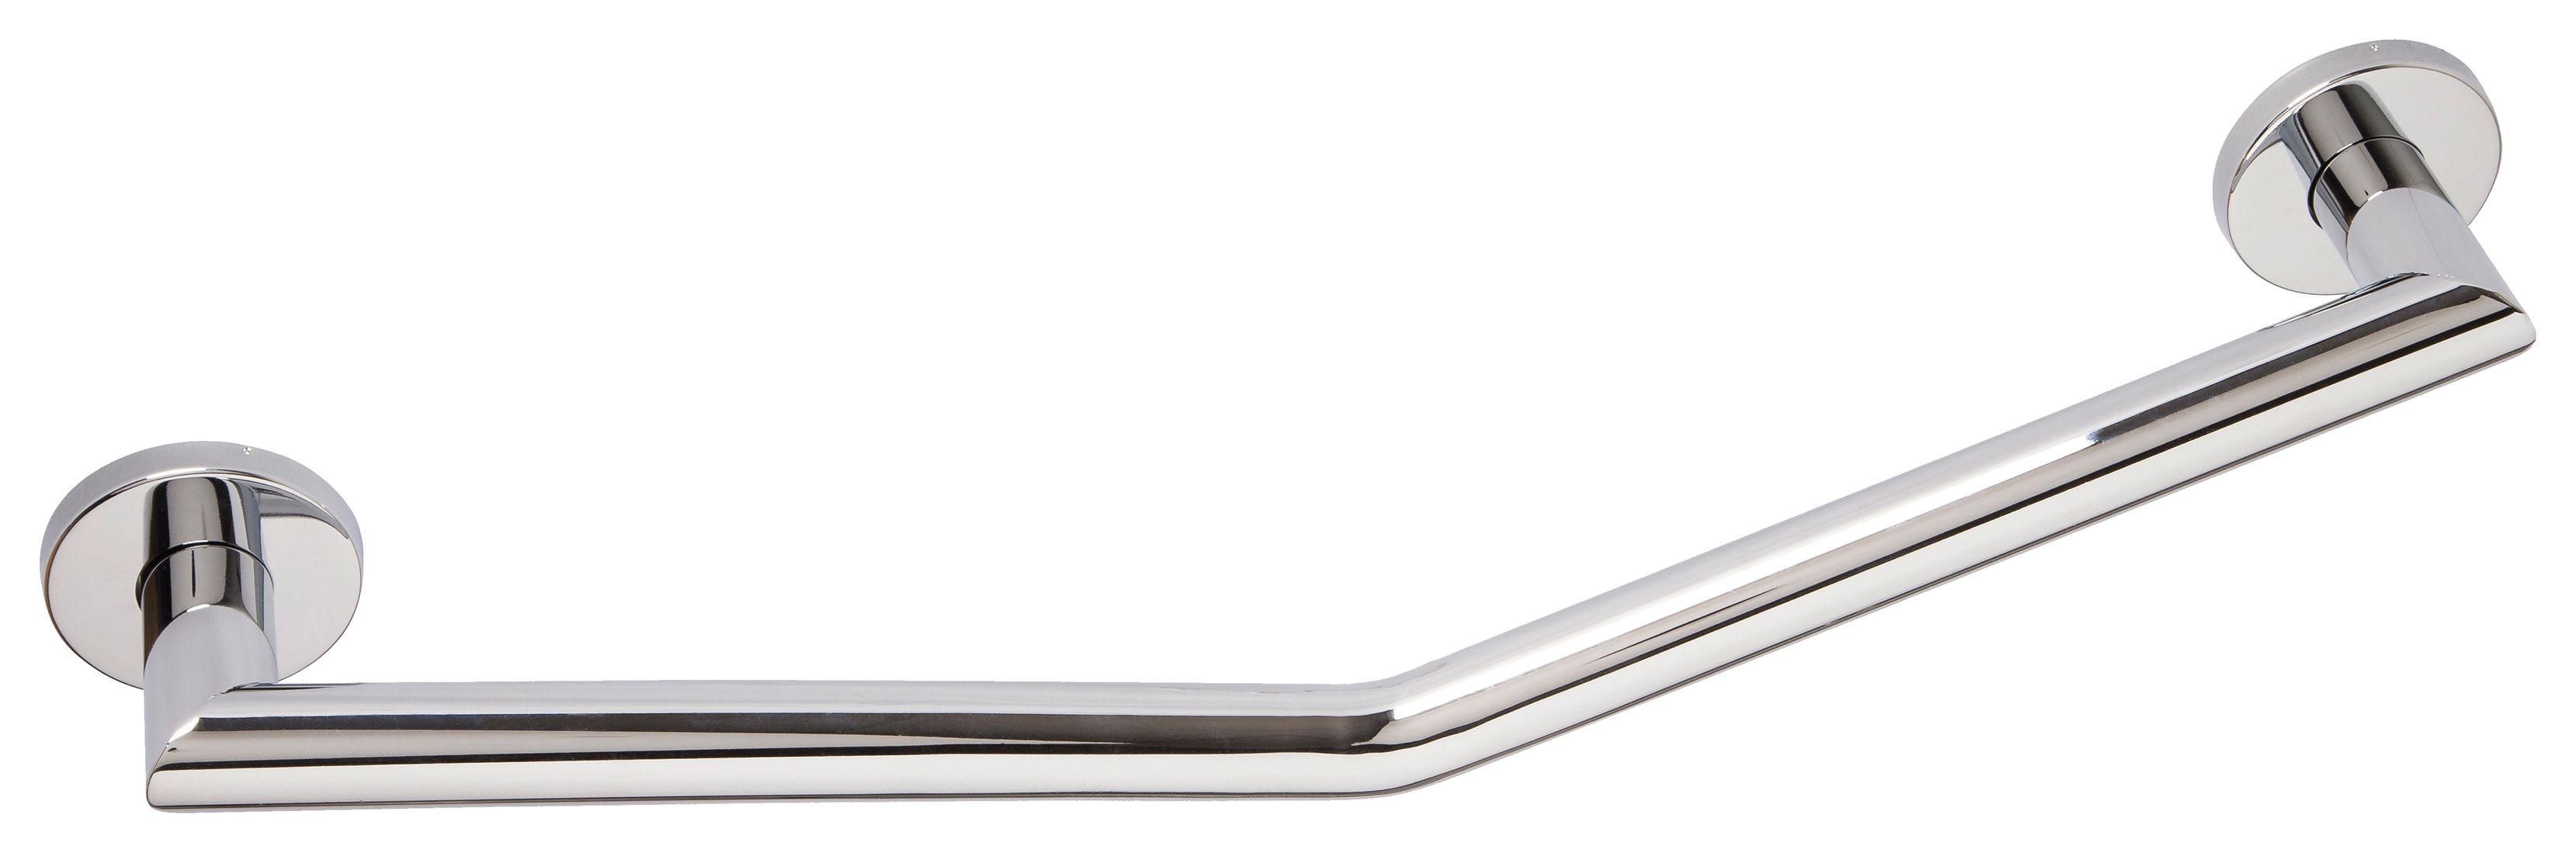 Image of Croydex Angled Chrome Grab Bar - 600mm